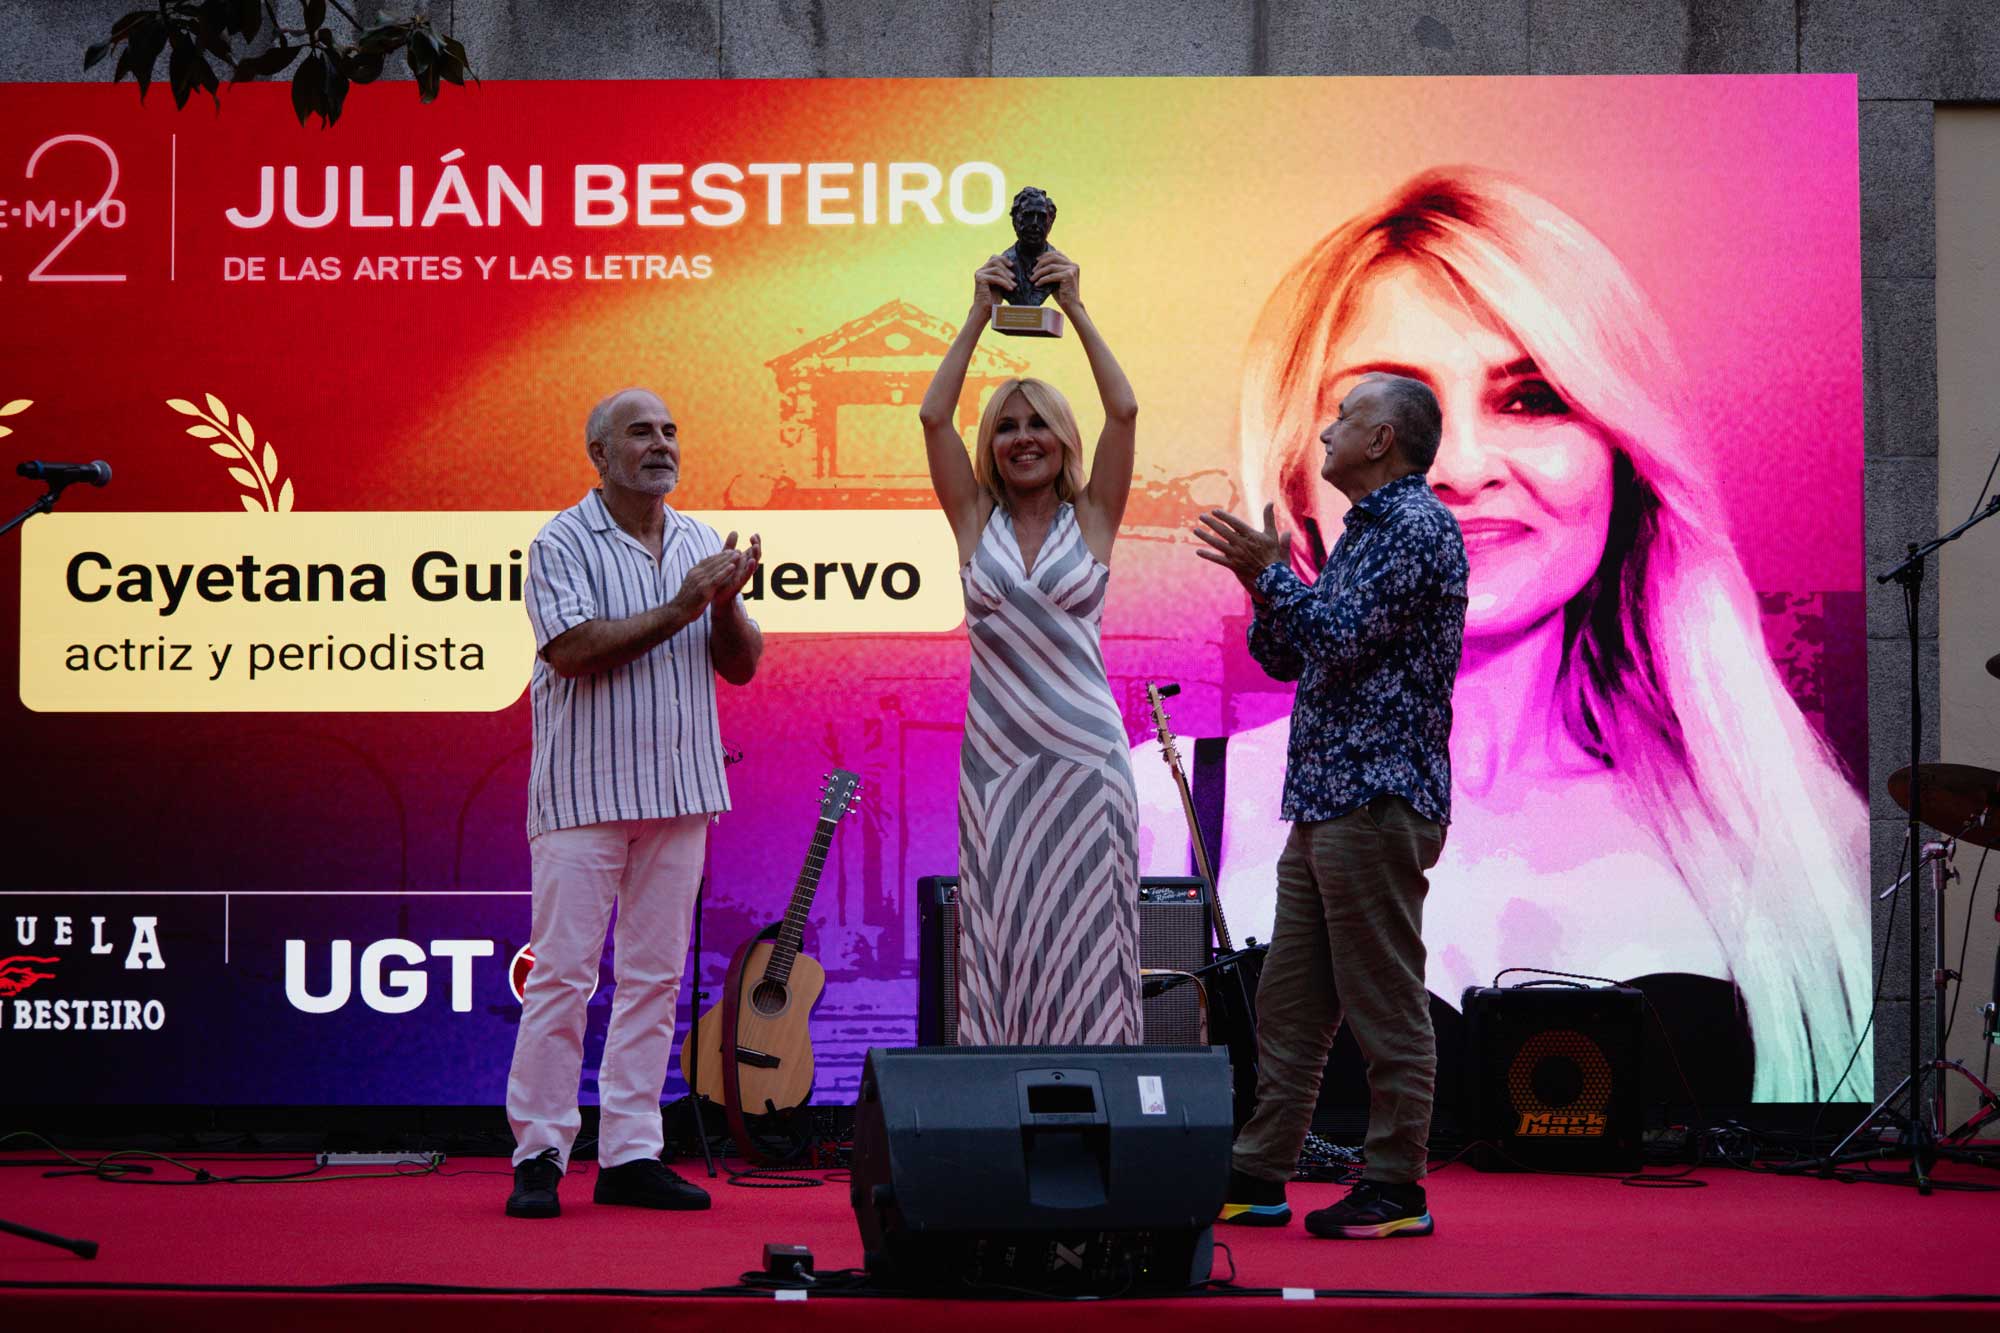 Cayetana Guillen Cuervo recibiendo el premio